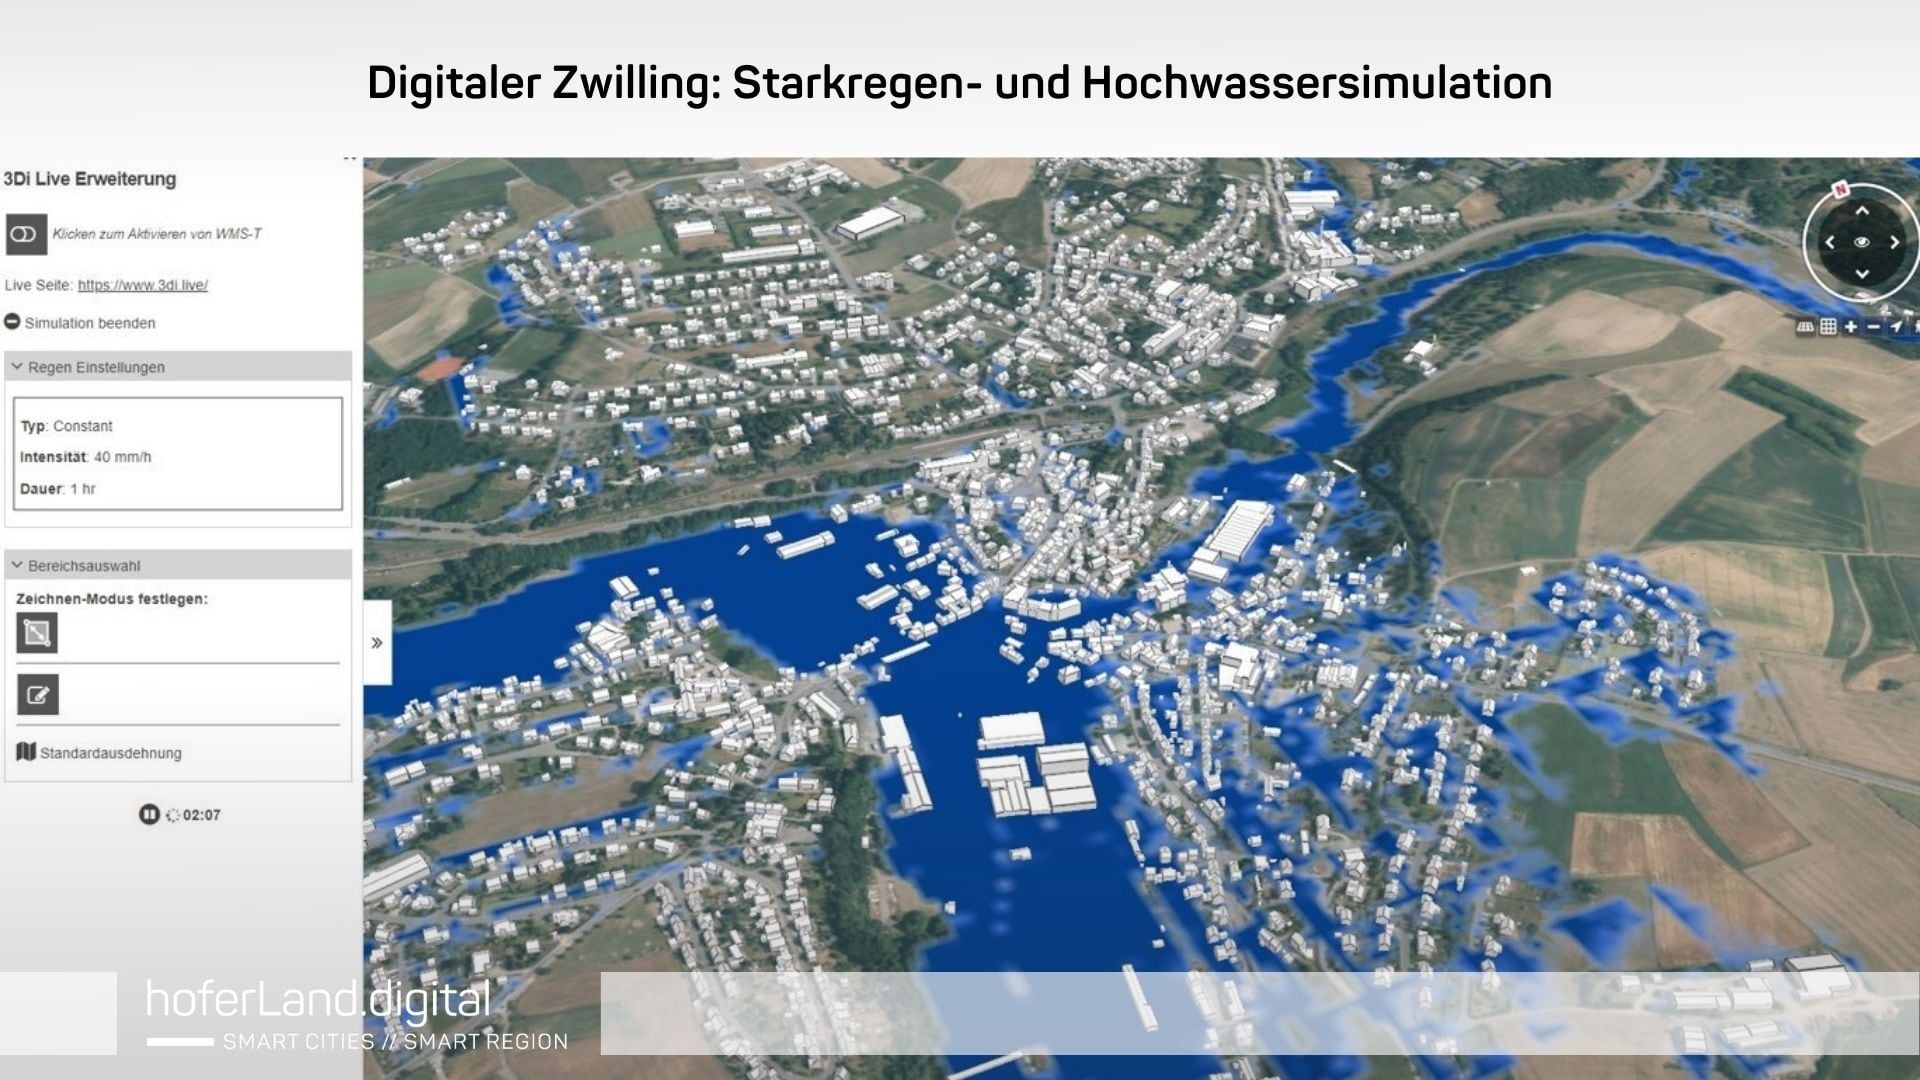 Digitaler Zwilling: Starkregen- und Hochwassersimulation